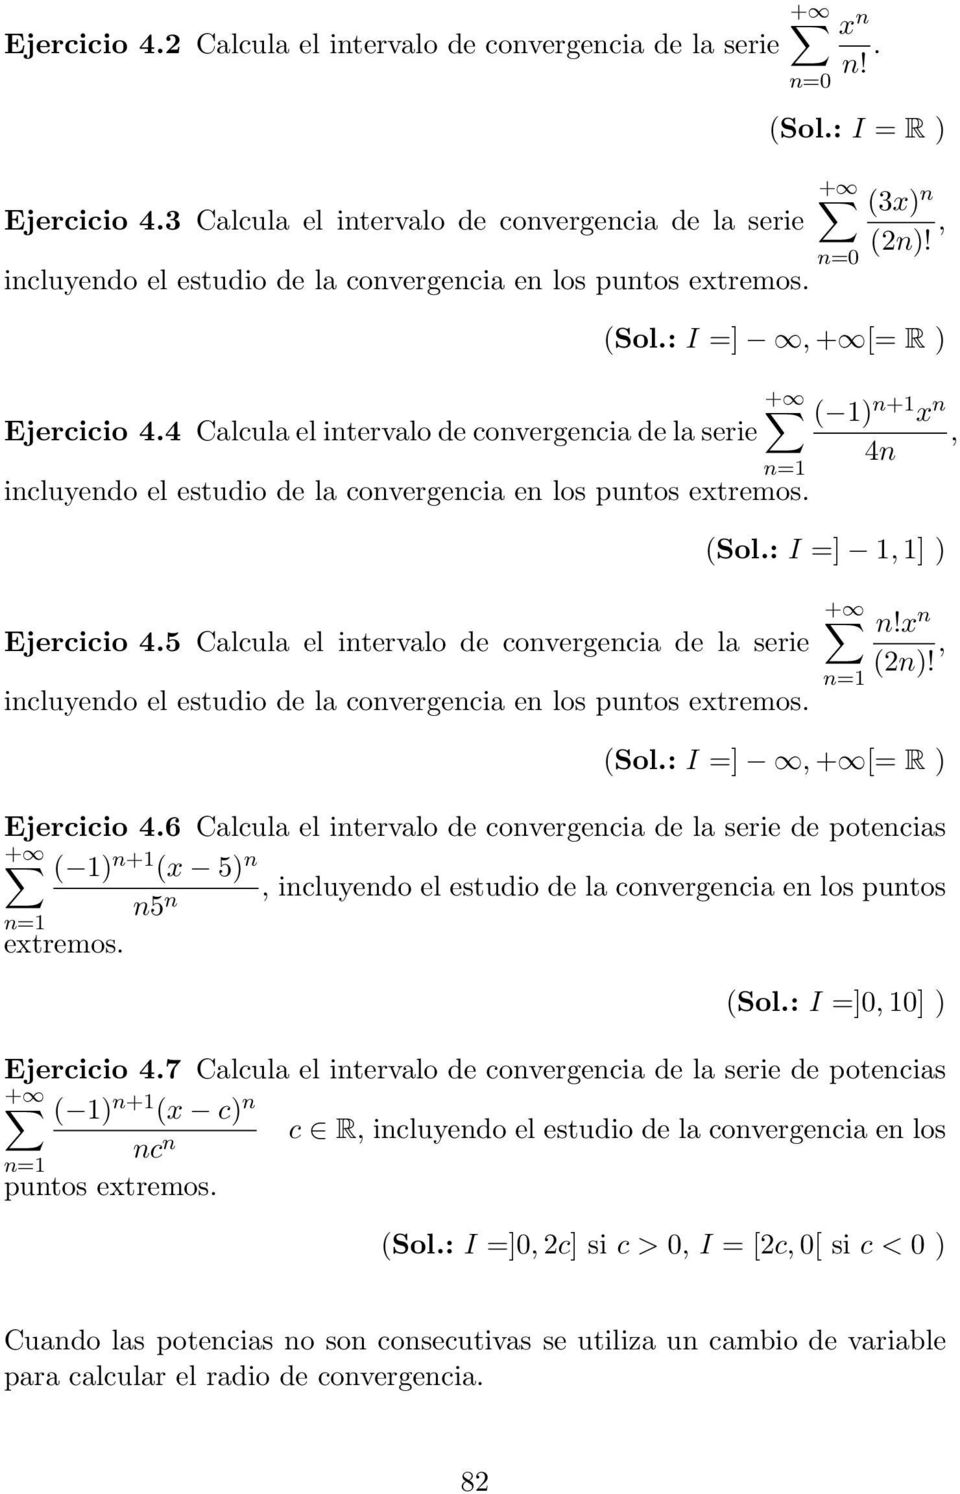 5 Calcula el itervalo de covergecia de la serie icluyedo el estudio de la covergecia e los putos extremos.!x (2)!, (Sol.: I =],+ [= R ) Ejercicio 4.